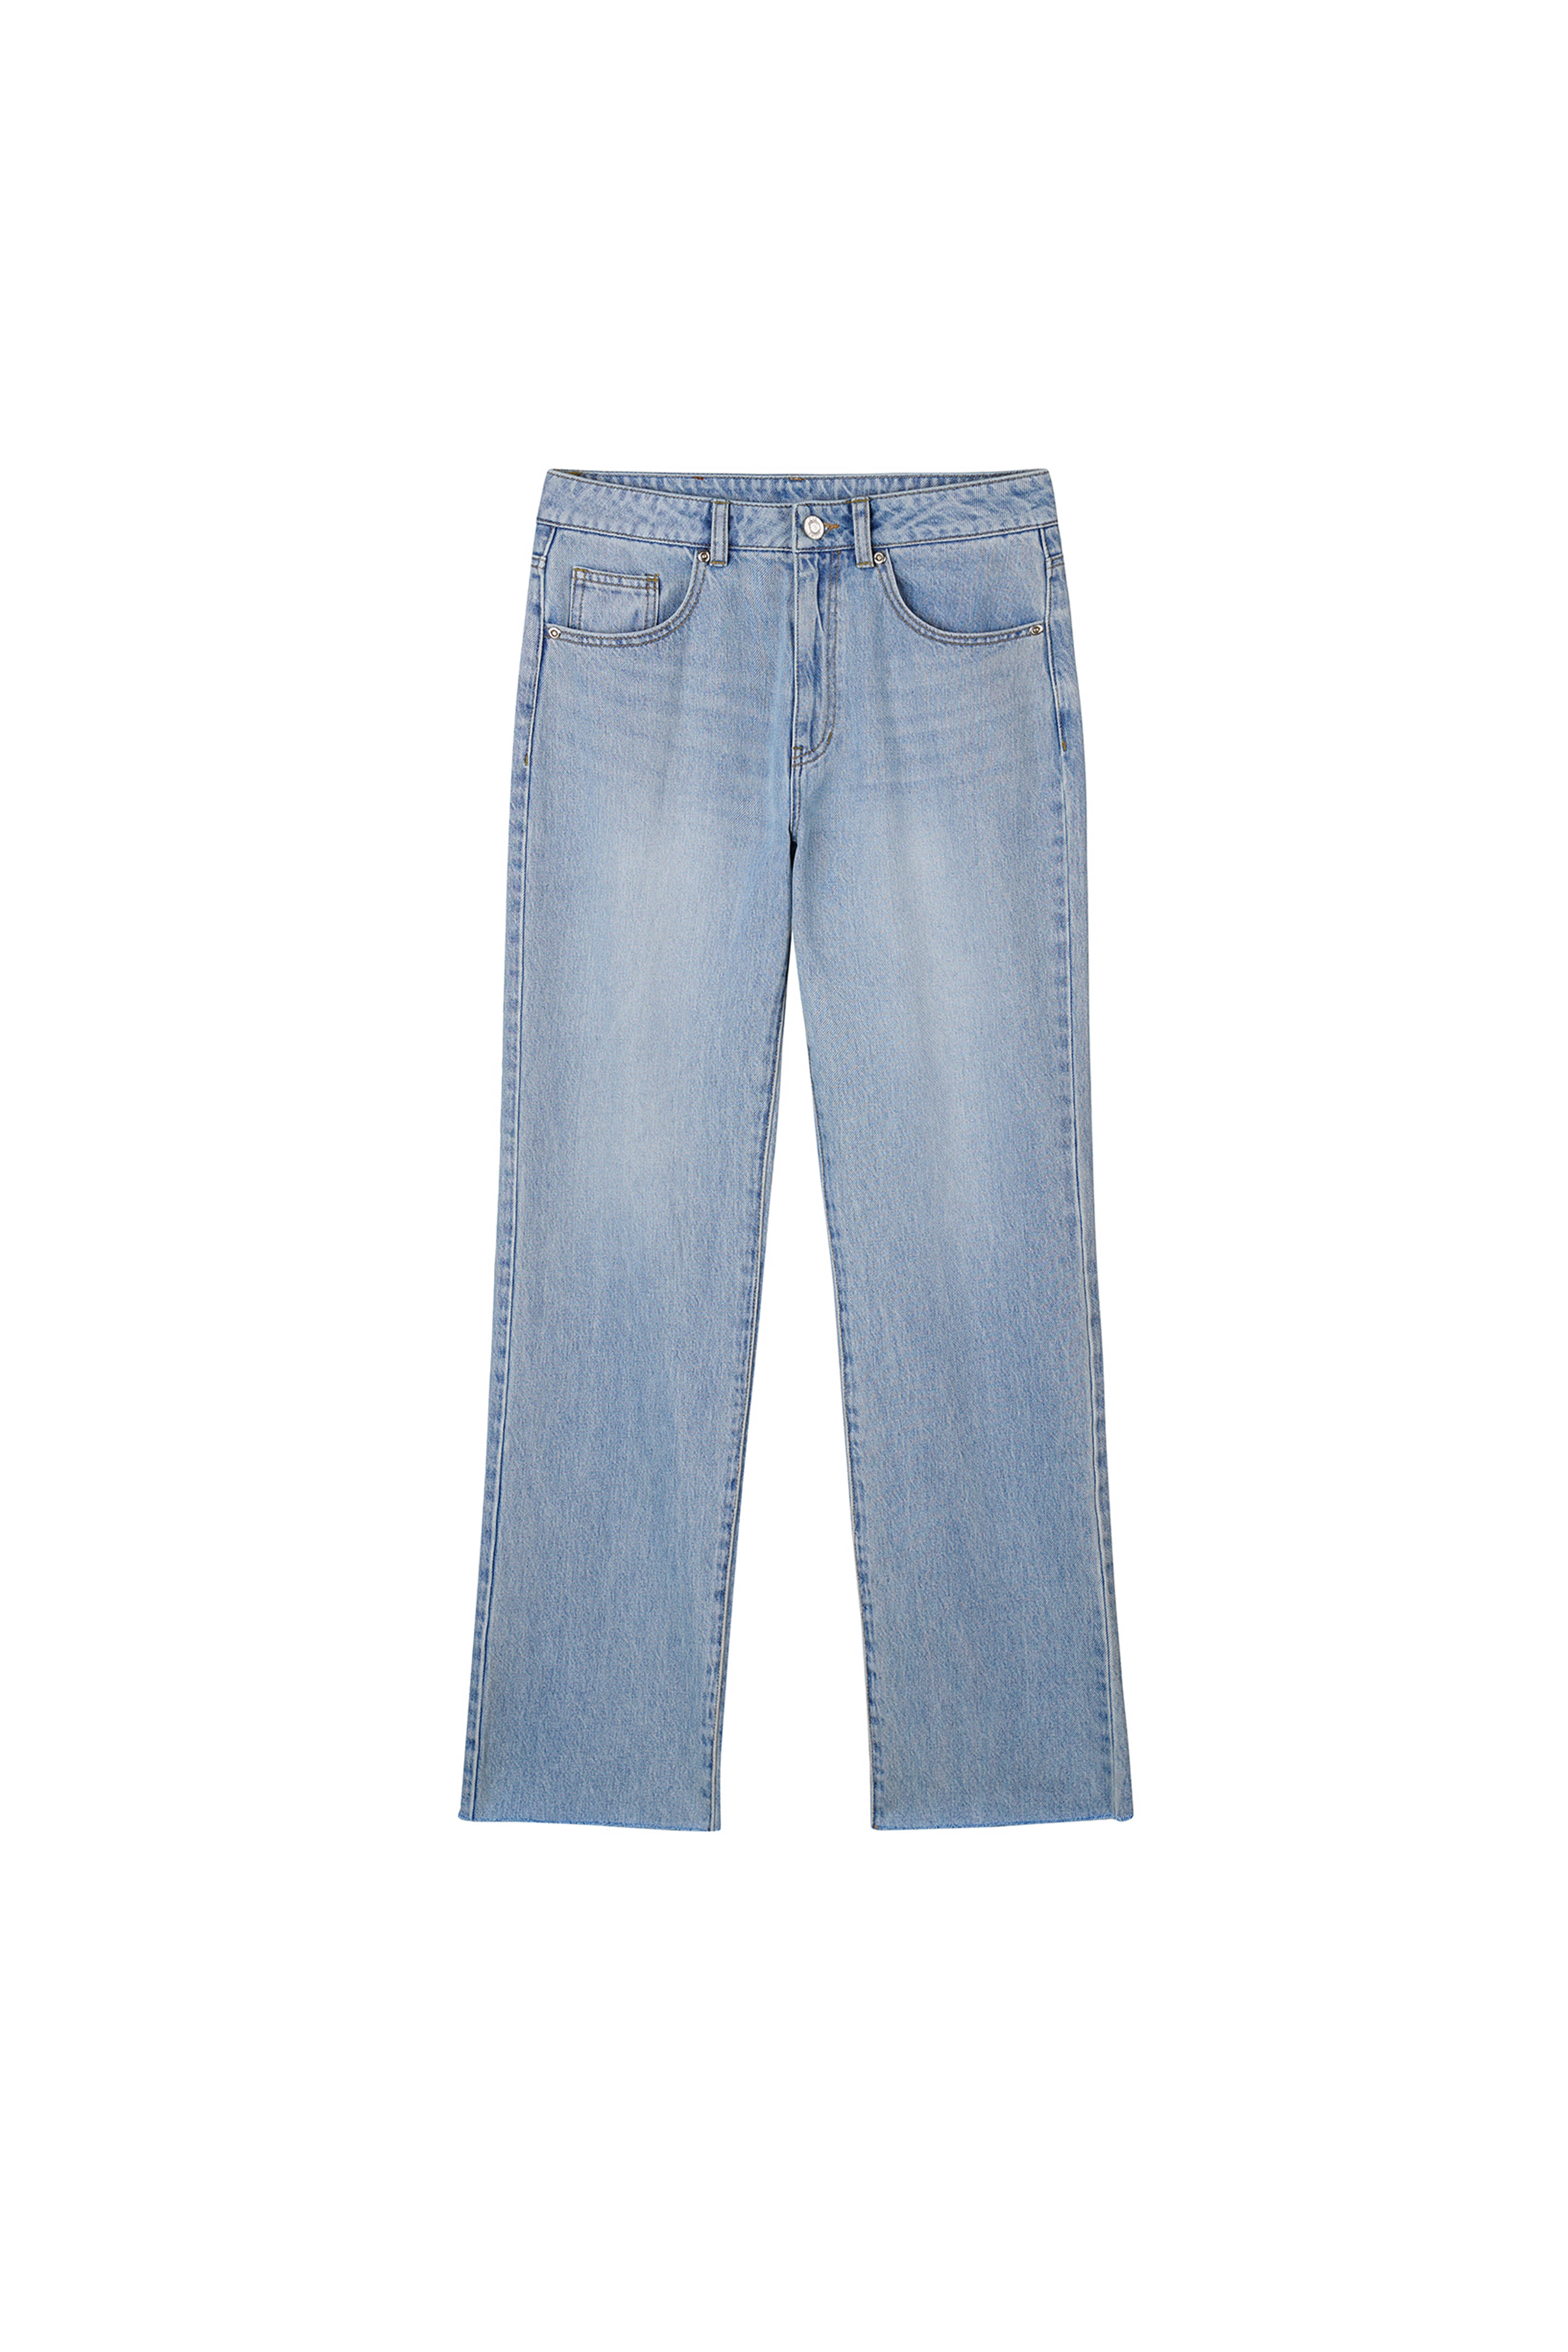 2nd) Jeans Midrise Standard Fit (Raw-cut)